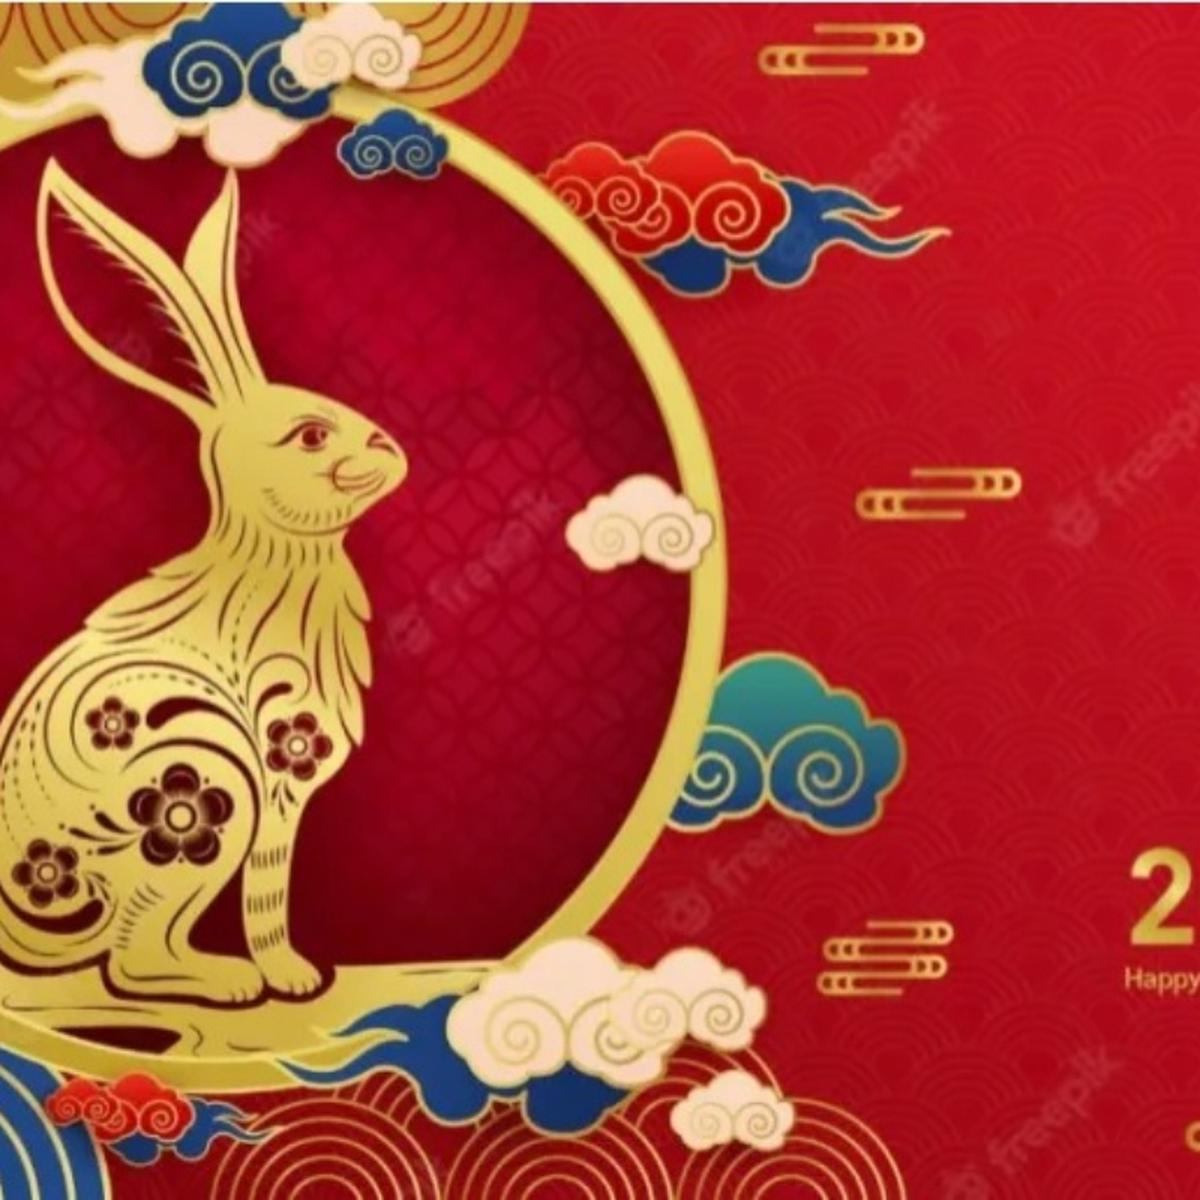 Año Nuevo Chino: ¿qué animal soy en el horóscopo chino?